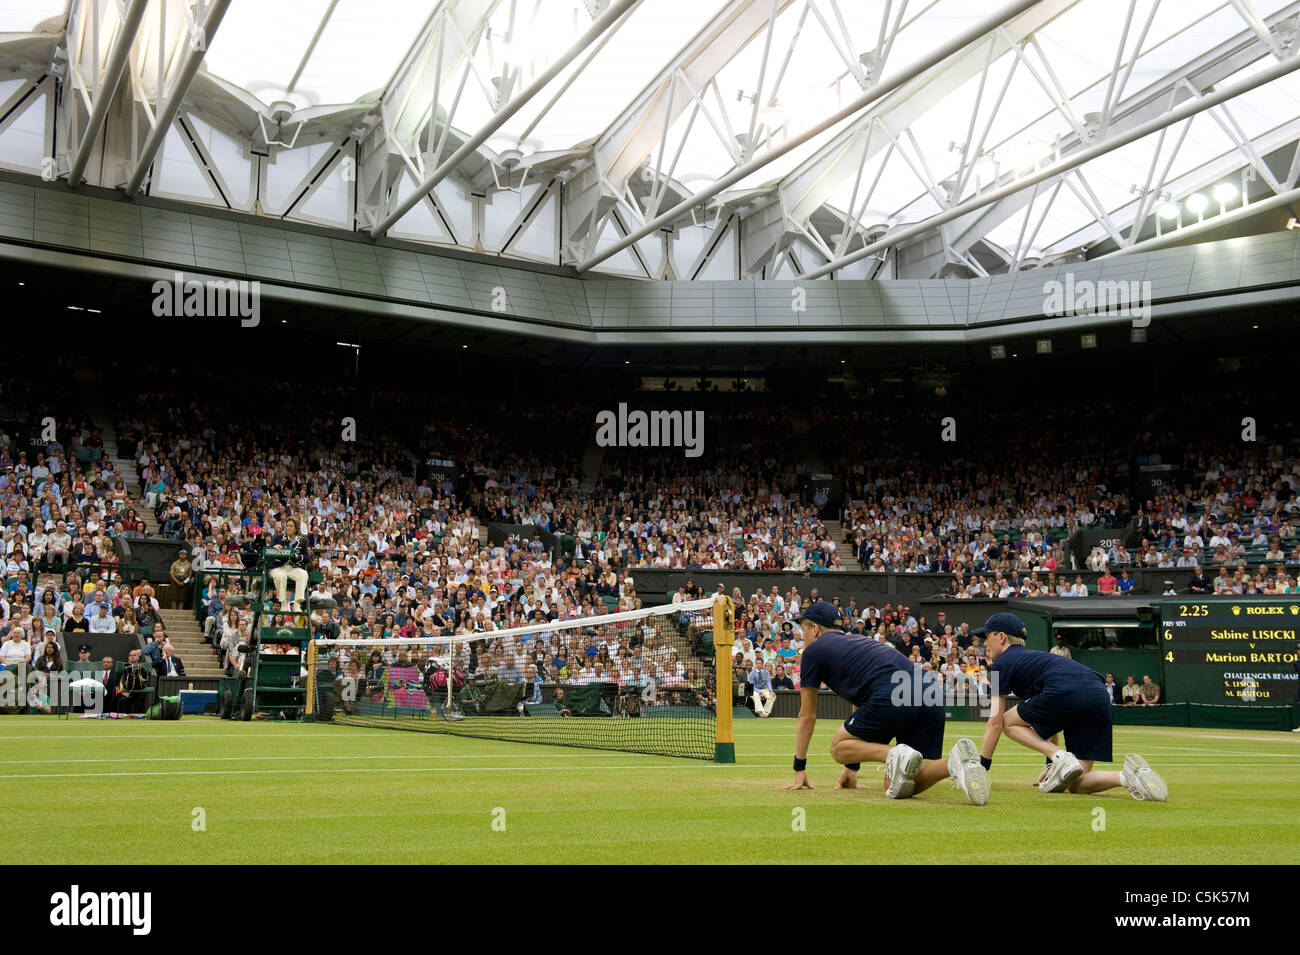 El centro de la cancha con el techo cerrado durante el 2011 Campeonatos de Tenis de Wimbledon Foto de stock